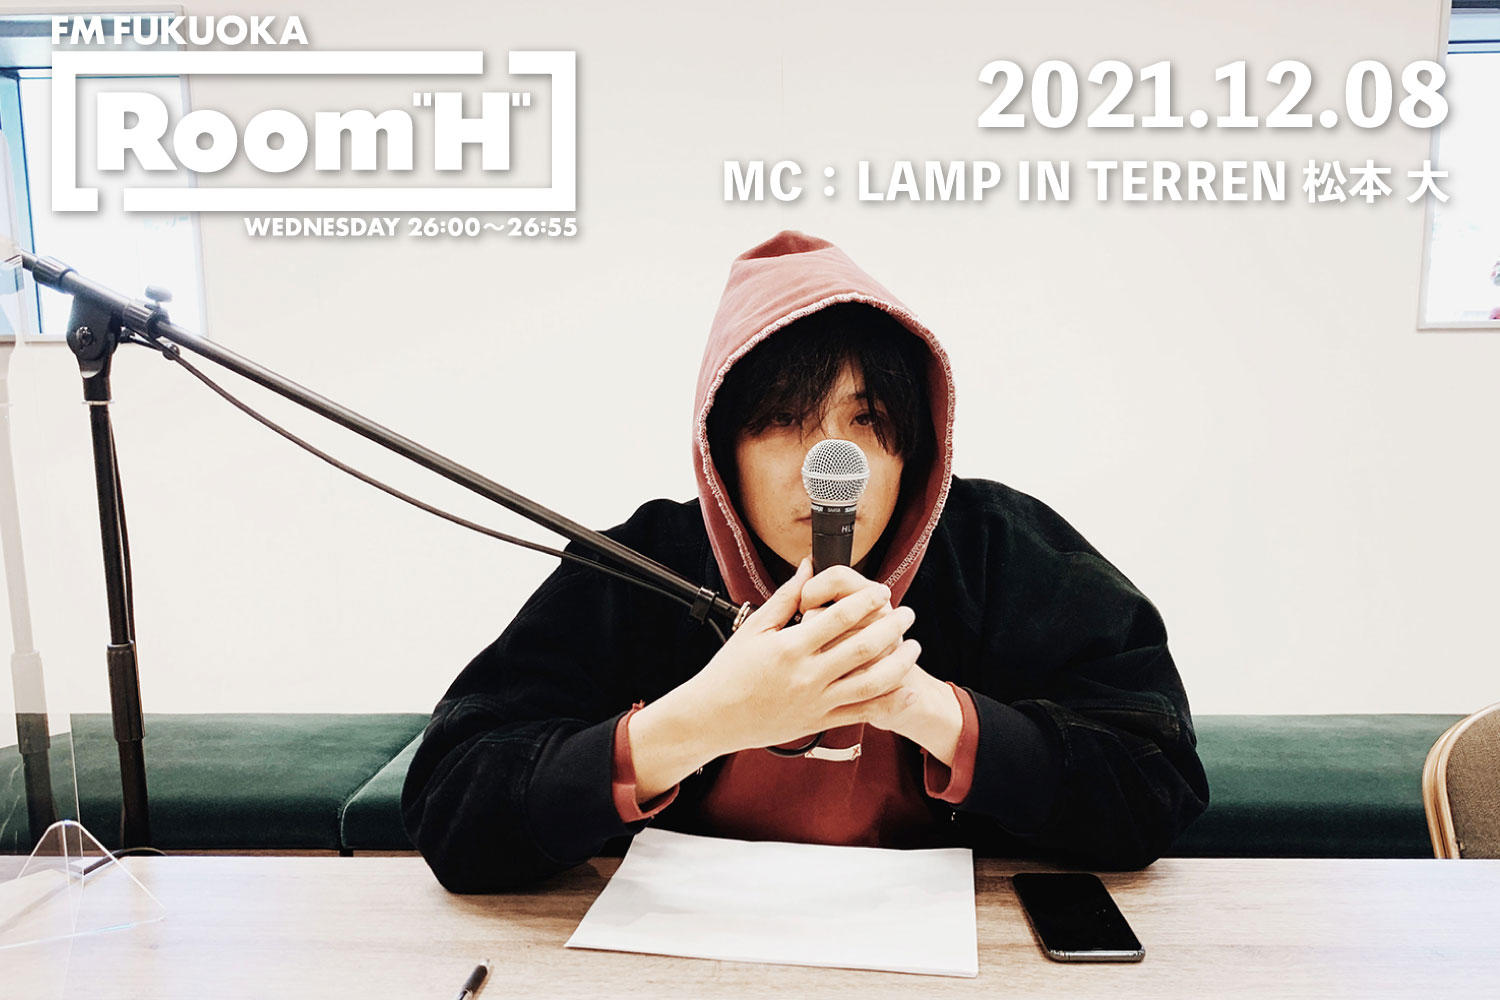 【読むラジオ】MC：松本大(LAMP IN TERREN) EP『A Dream Of Dreams』紹介！「Room H」 -2021.12.08-